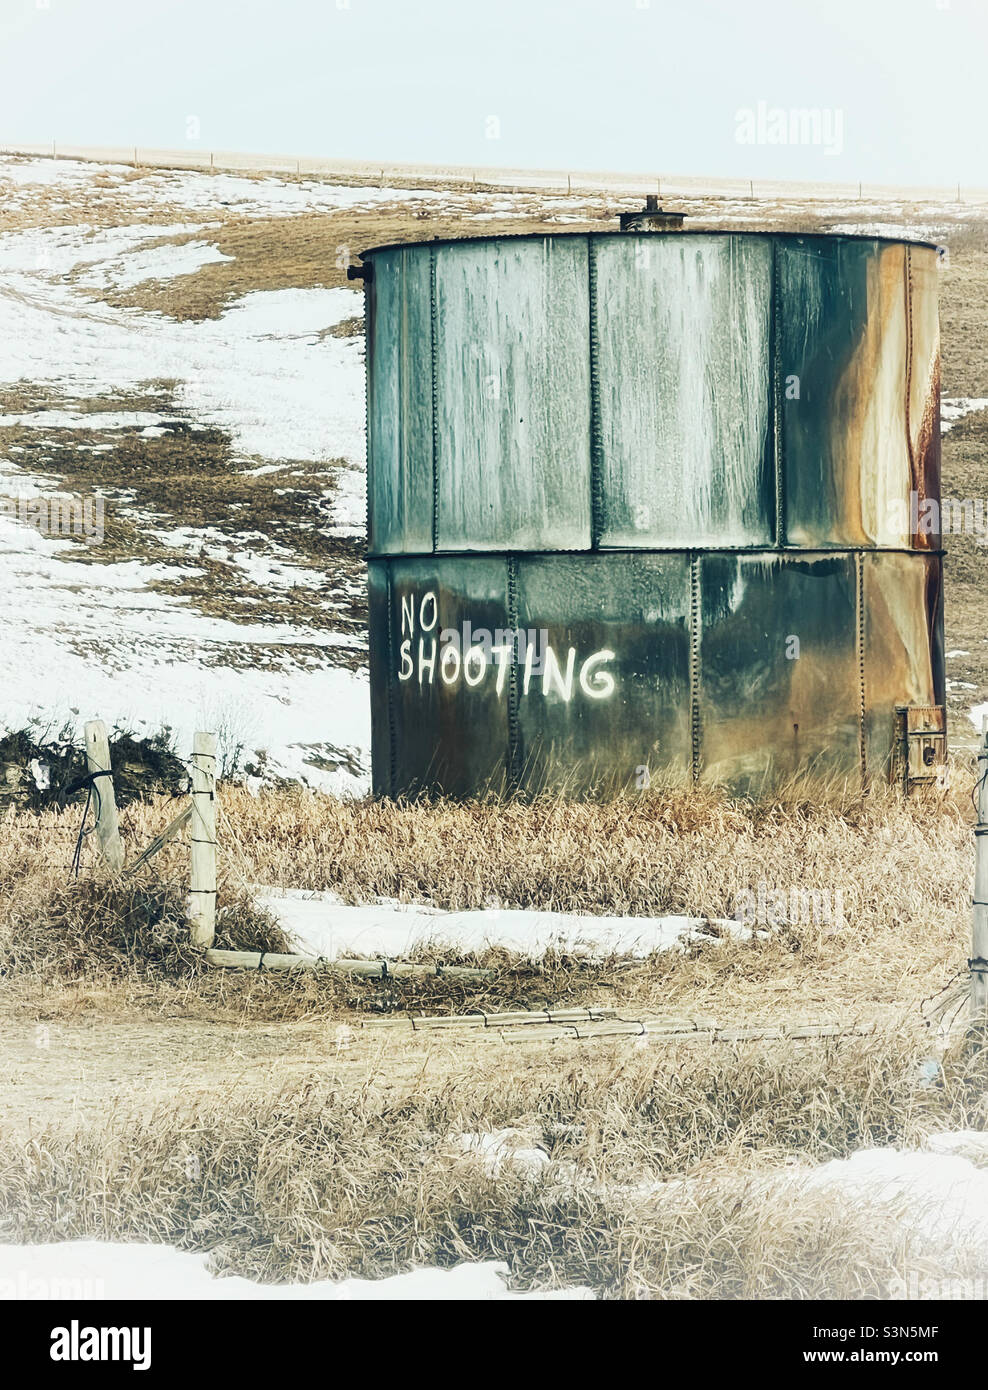 Grand tambour de stockage avec "pas de tir" peint à l'extérieur.Tourné dans les contreforts, près de Calgary, Alberta, Canada. Banque D'Images